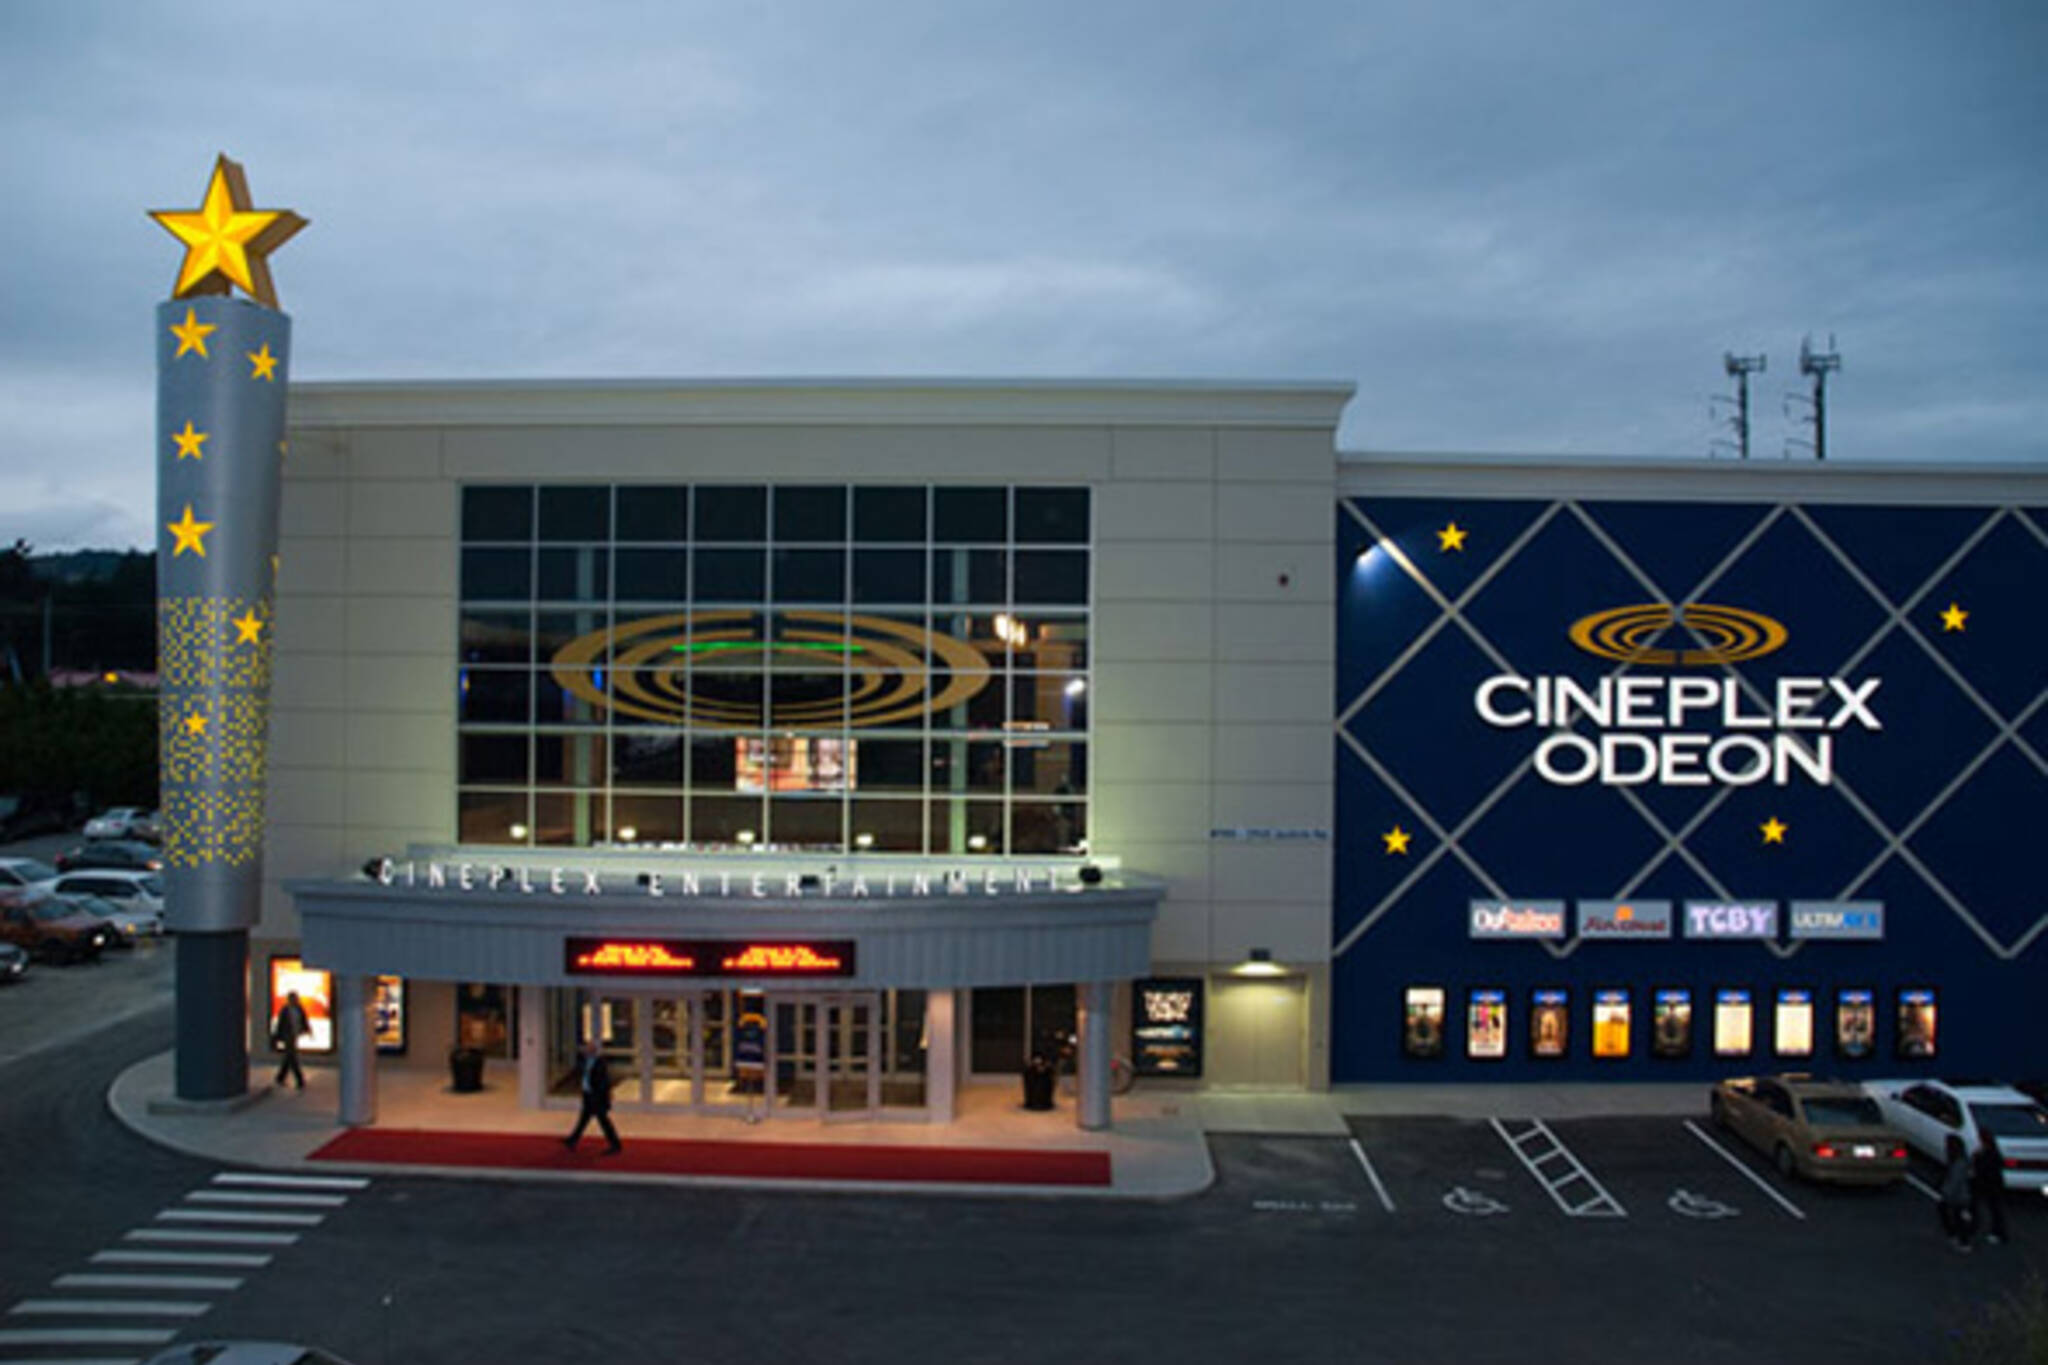 Cineplex Odeon prices